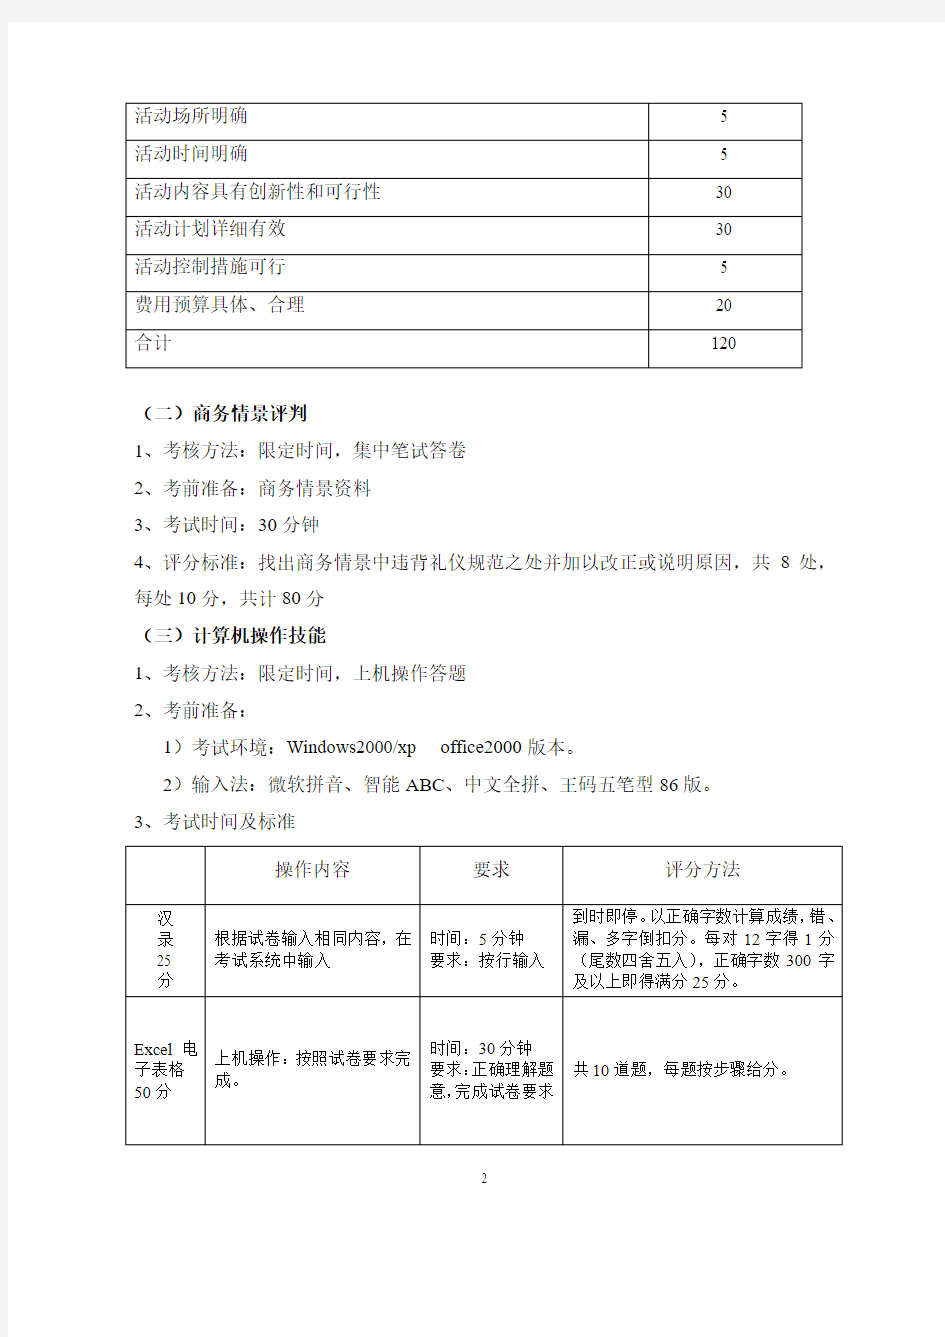 江苏省普通高校对口单独招生市场营销类技能考试标准- 关于印发